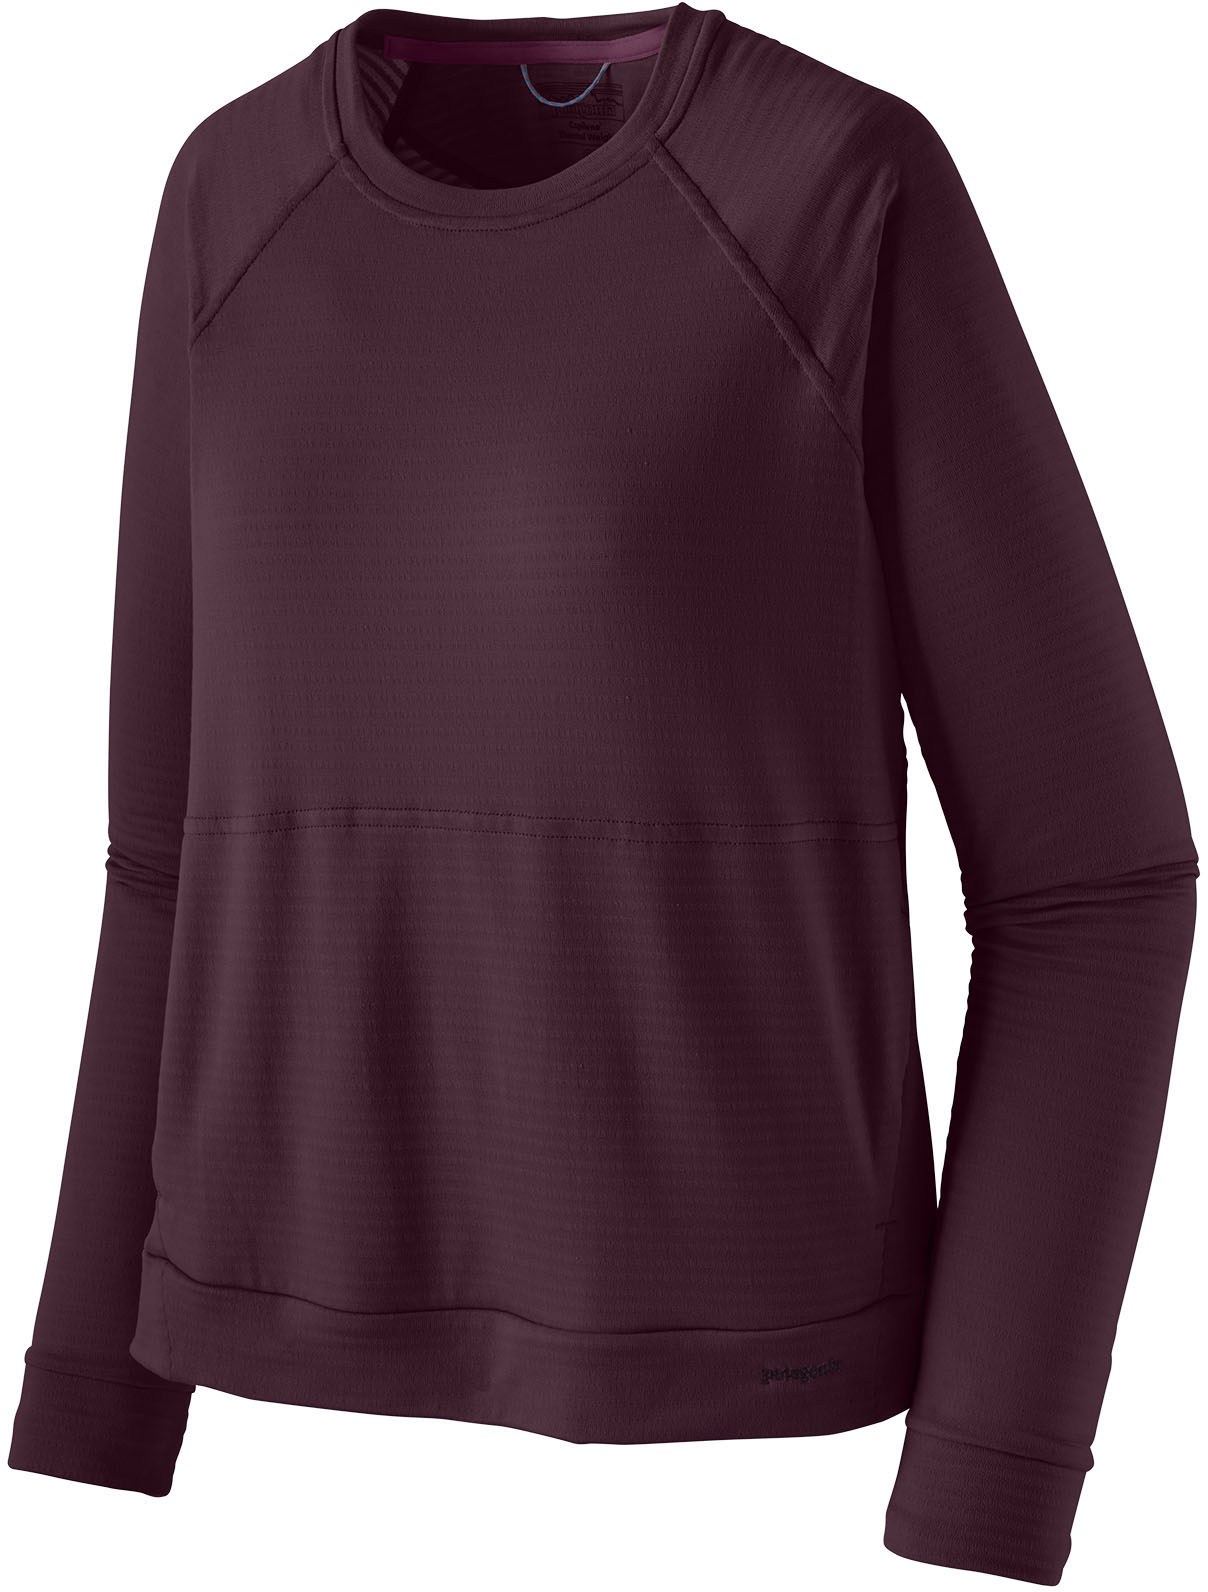 Утепленная футболка Capilene с длинными рукавами — женская Patagonia, фиолетовый топ r1 lite yulex с длинными рукавами женский patagonia черный